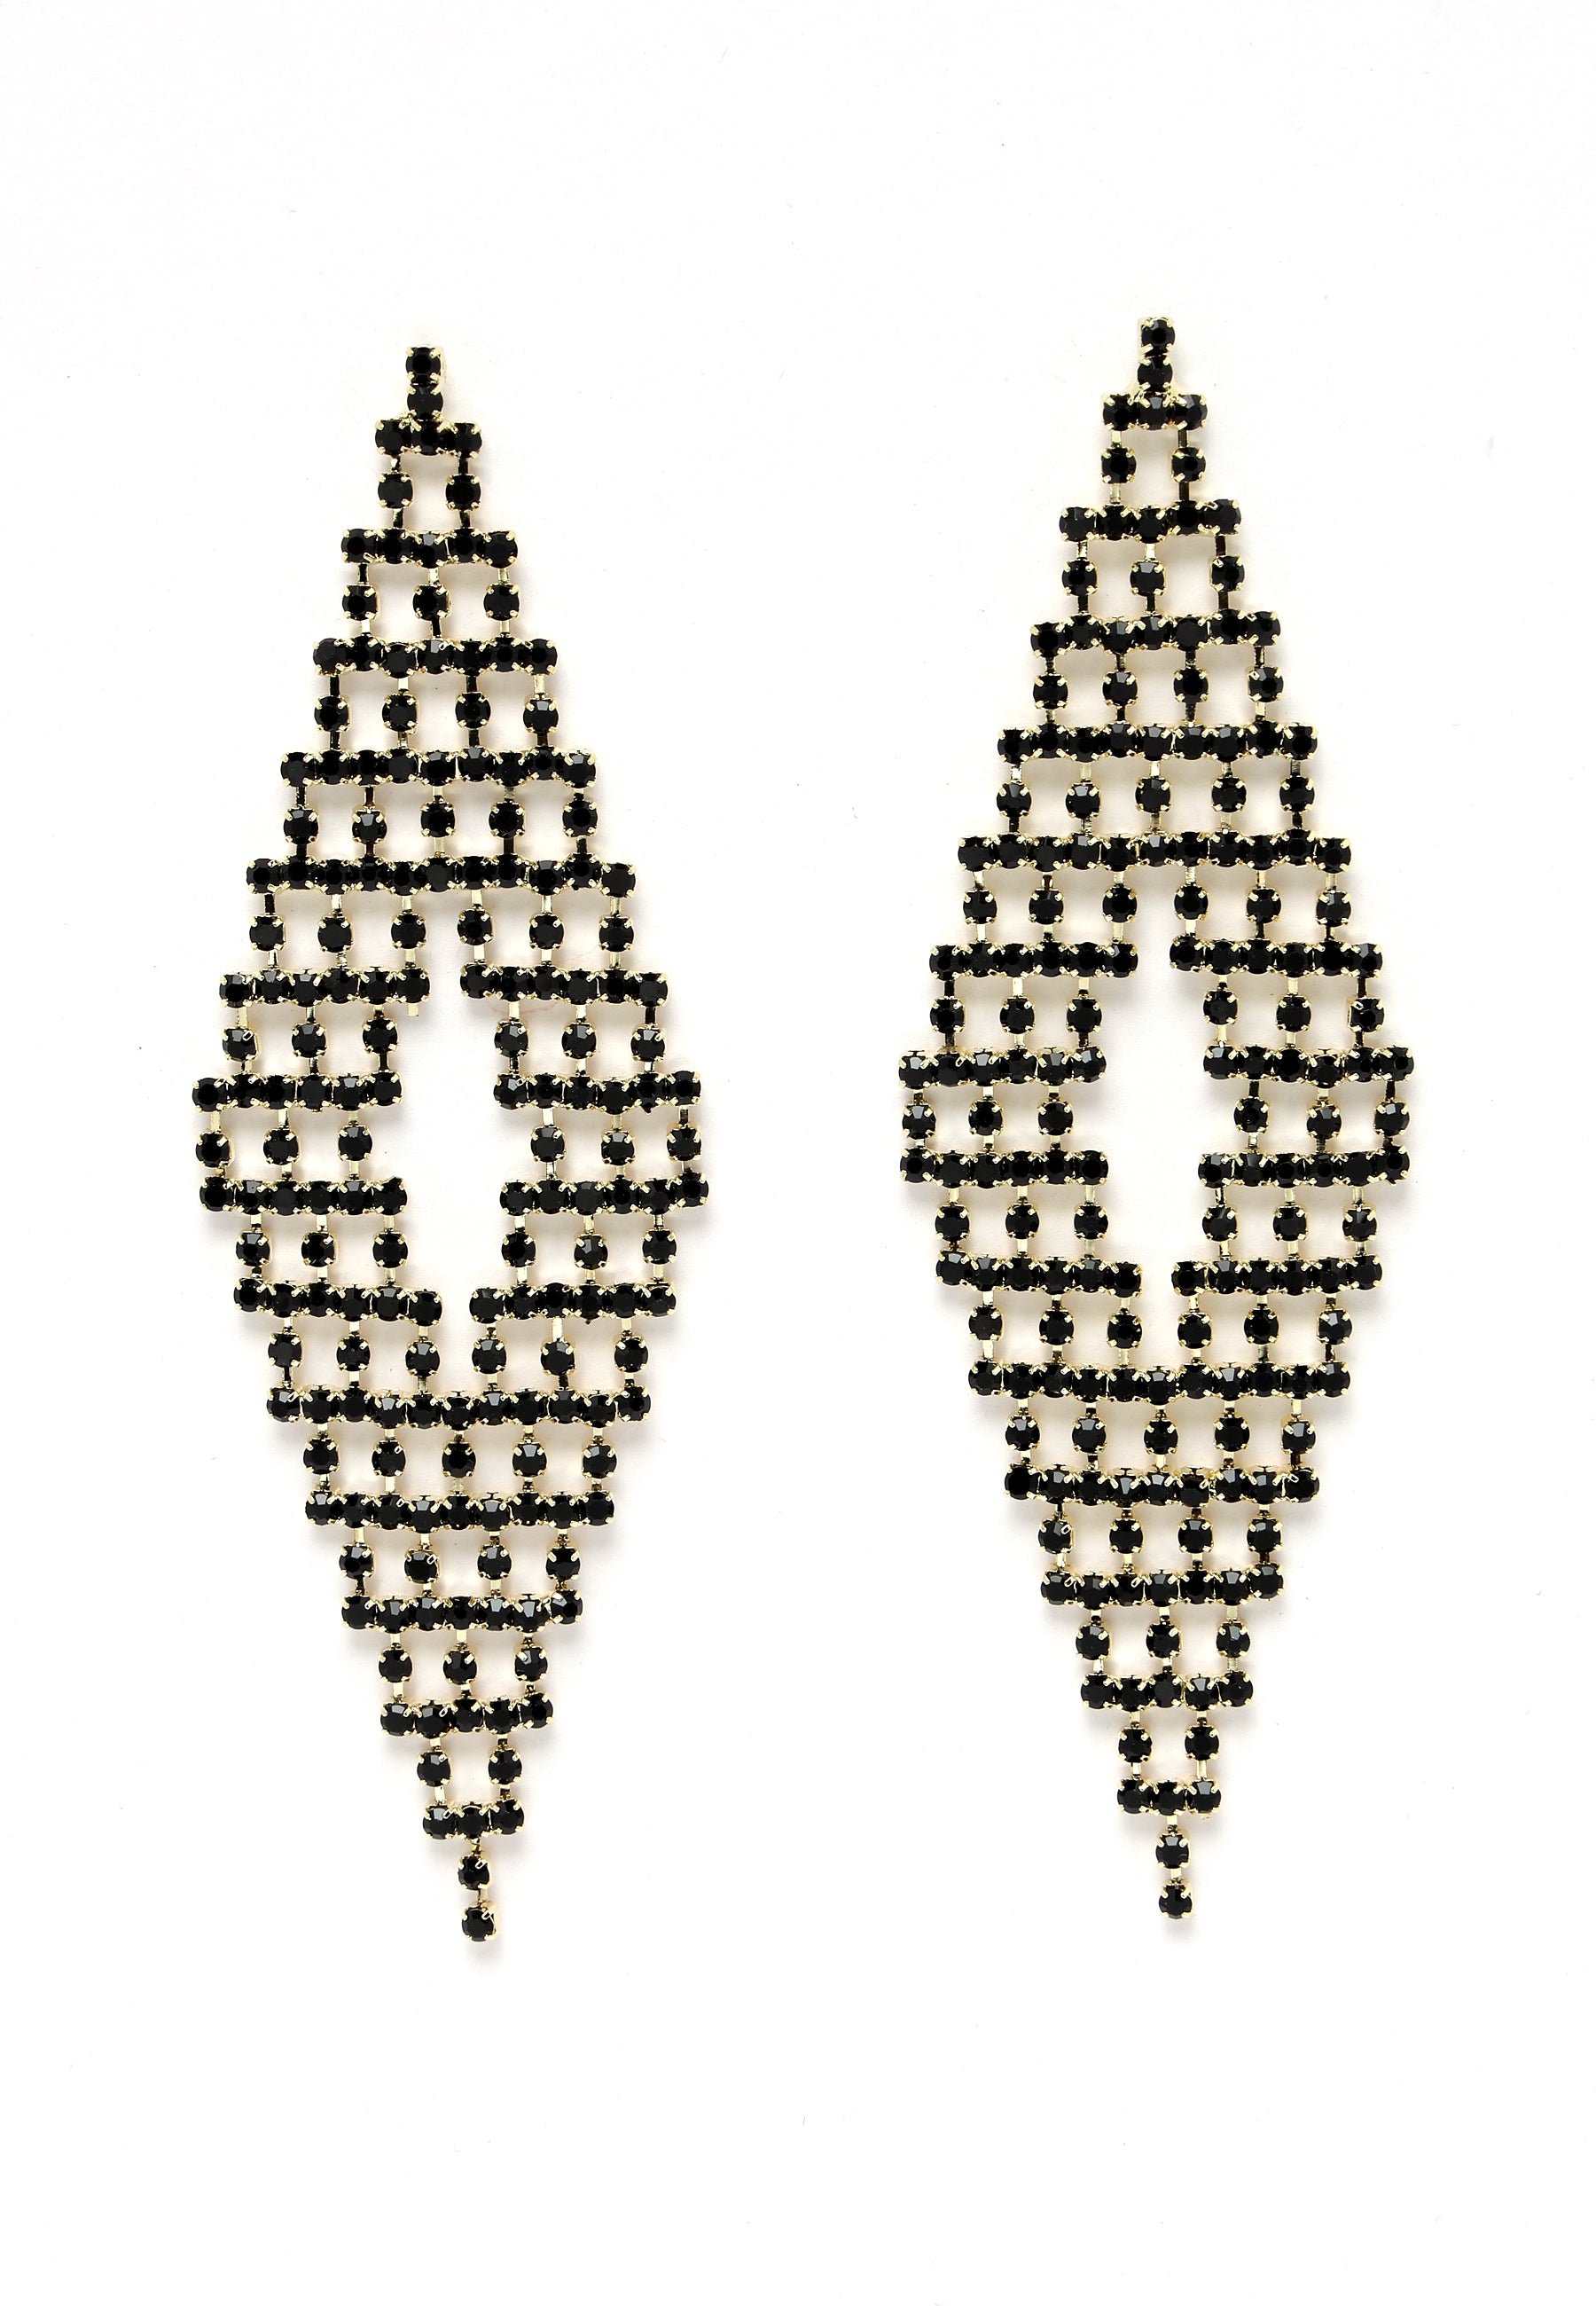 Oszałamiające kolczyki w kształcie rombu z czarnego kryształu